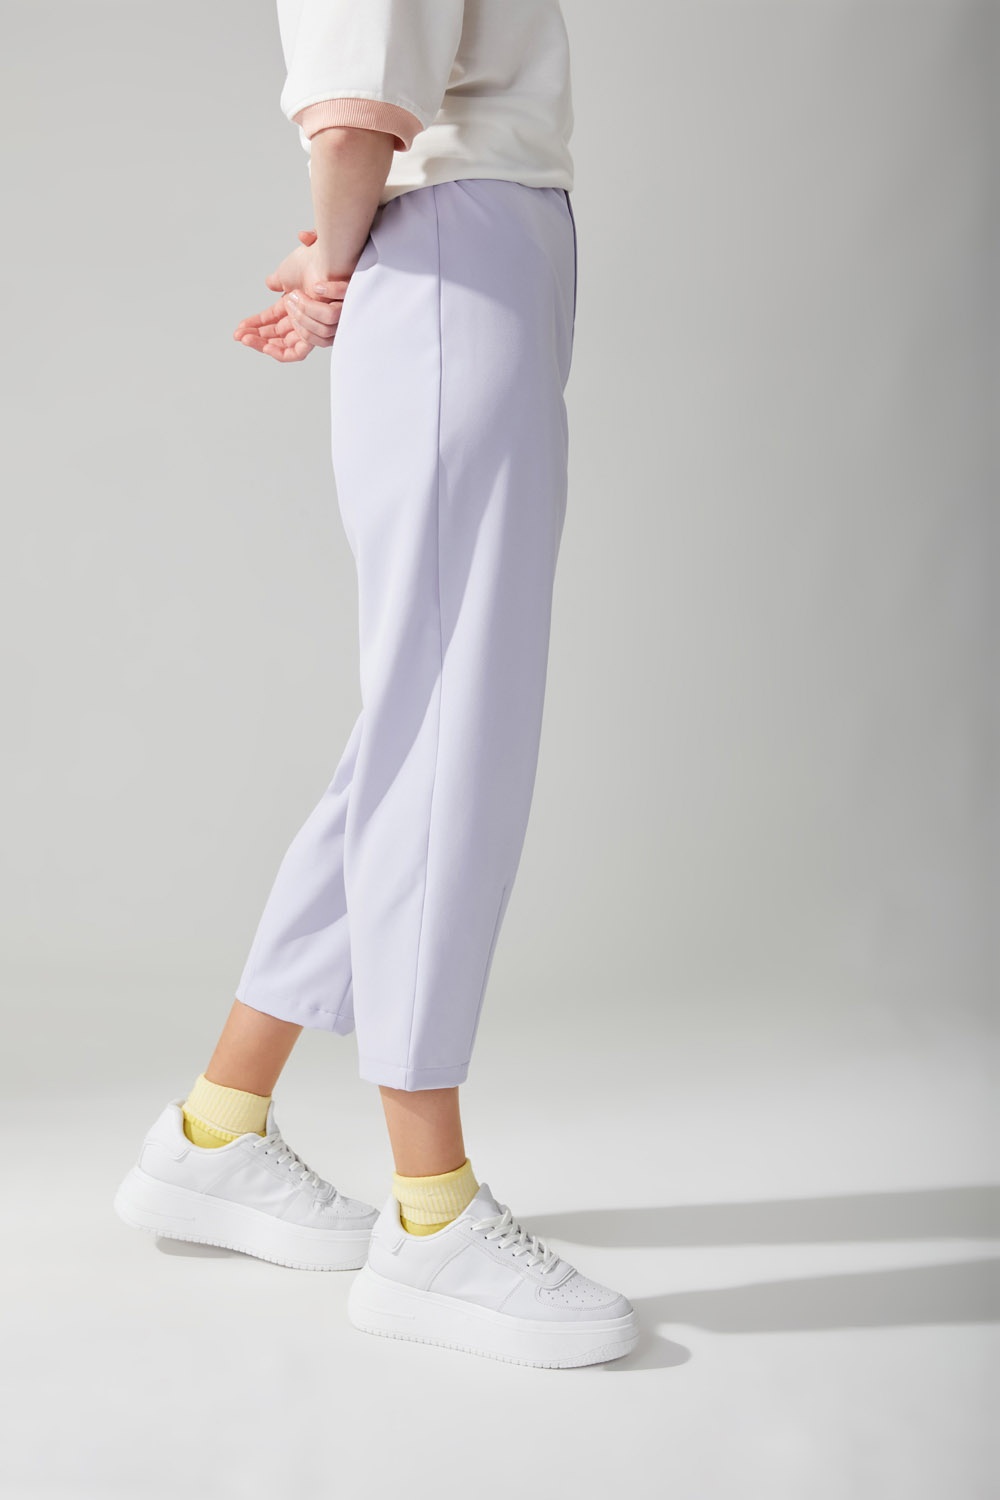 Pastel Color Pants (Lilac)